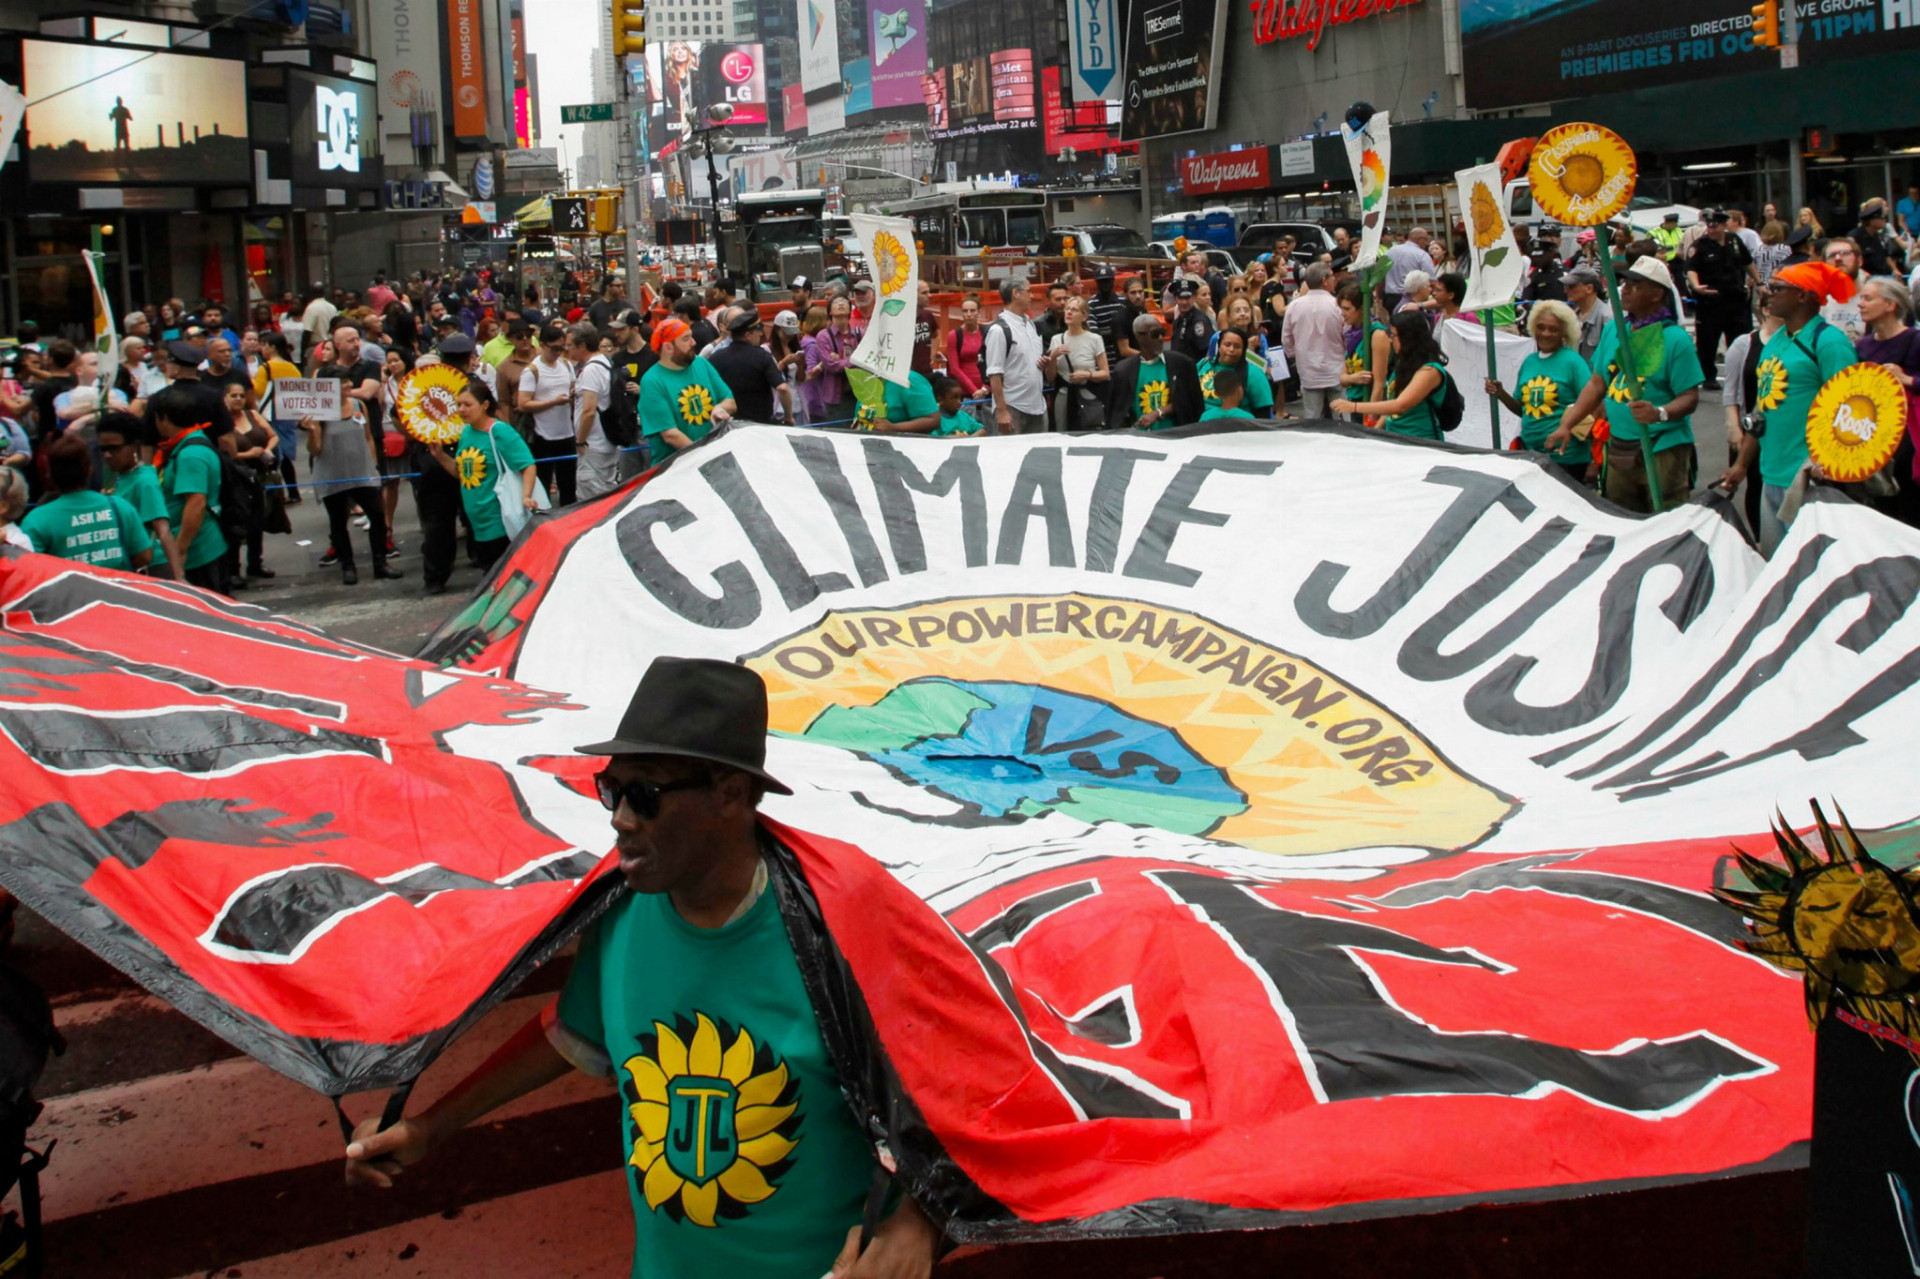 Pochody za ochranu klímy sa konali aj pred podpisom Parížskej dohody. Na snímke pochod v New Yorku z roku 2014.